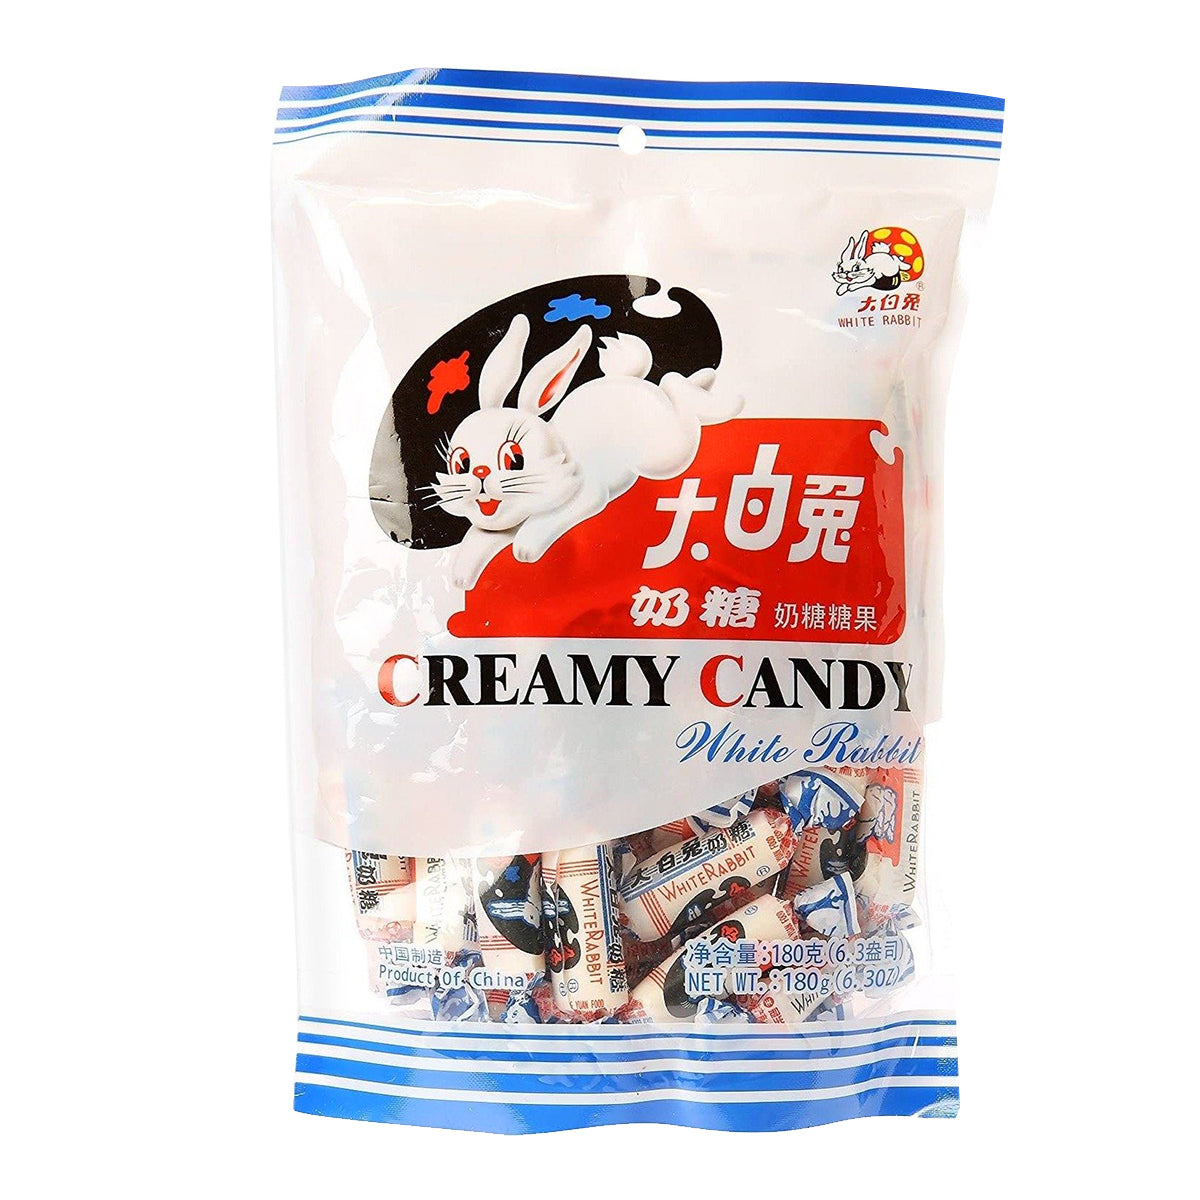 white rabbit candy - 6.3oz